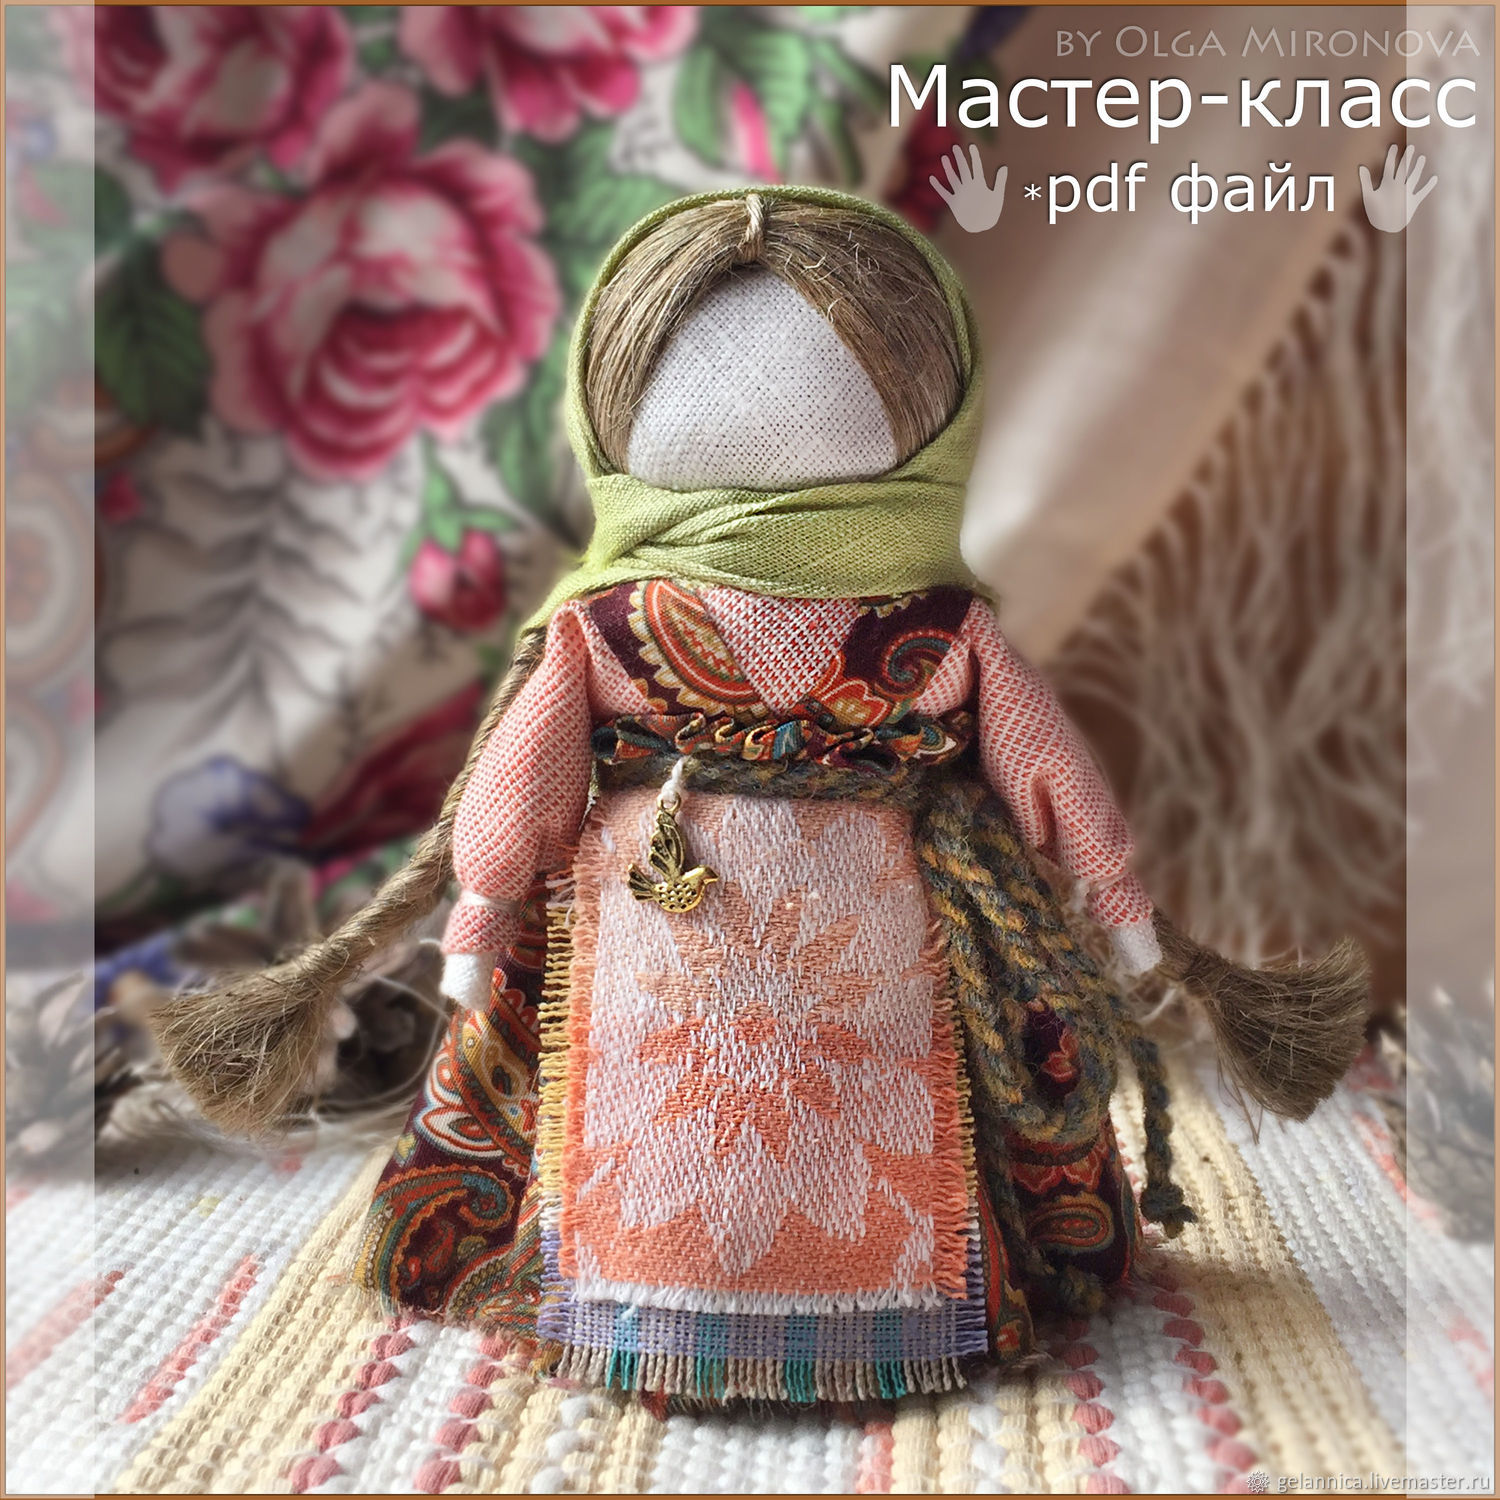 Мастер-класс по изготовлению обрядовой куклы «Масленица» с пошаговыми фото.